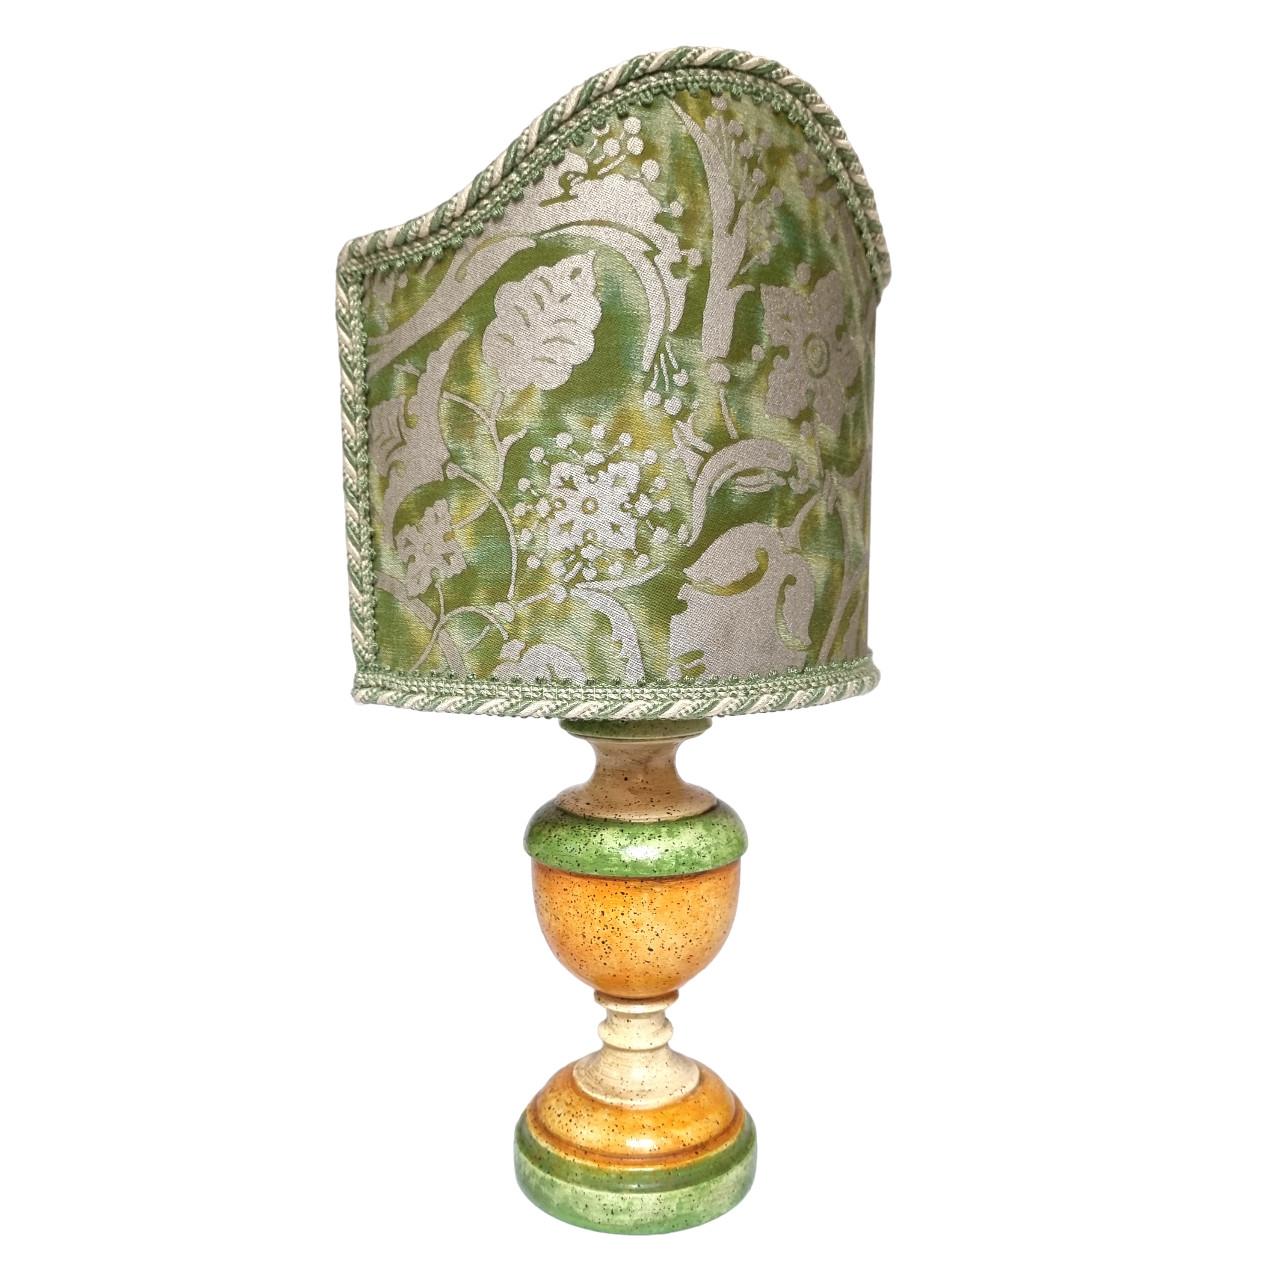 Il s'agit d'une paire absolument fabuleuse de lampes de table en bois tourné laqué vert, orange et ivoire sur une base ronde, fabriquées à la main en Toscane (Italie) et finies avec une patine antique.
L'abat-jour est neuf, fabriqué à la main en